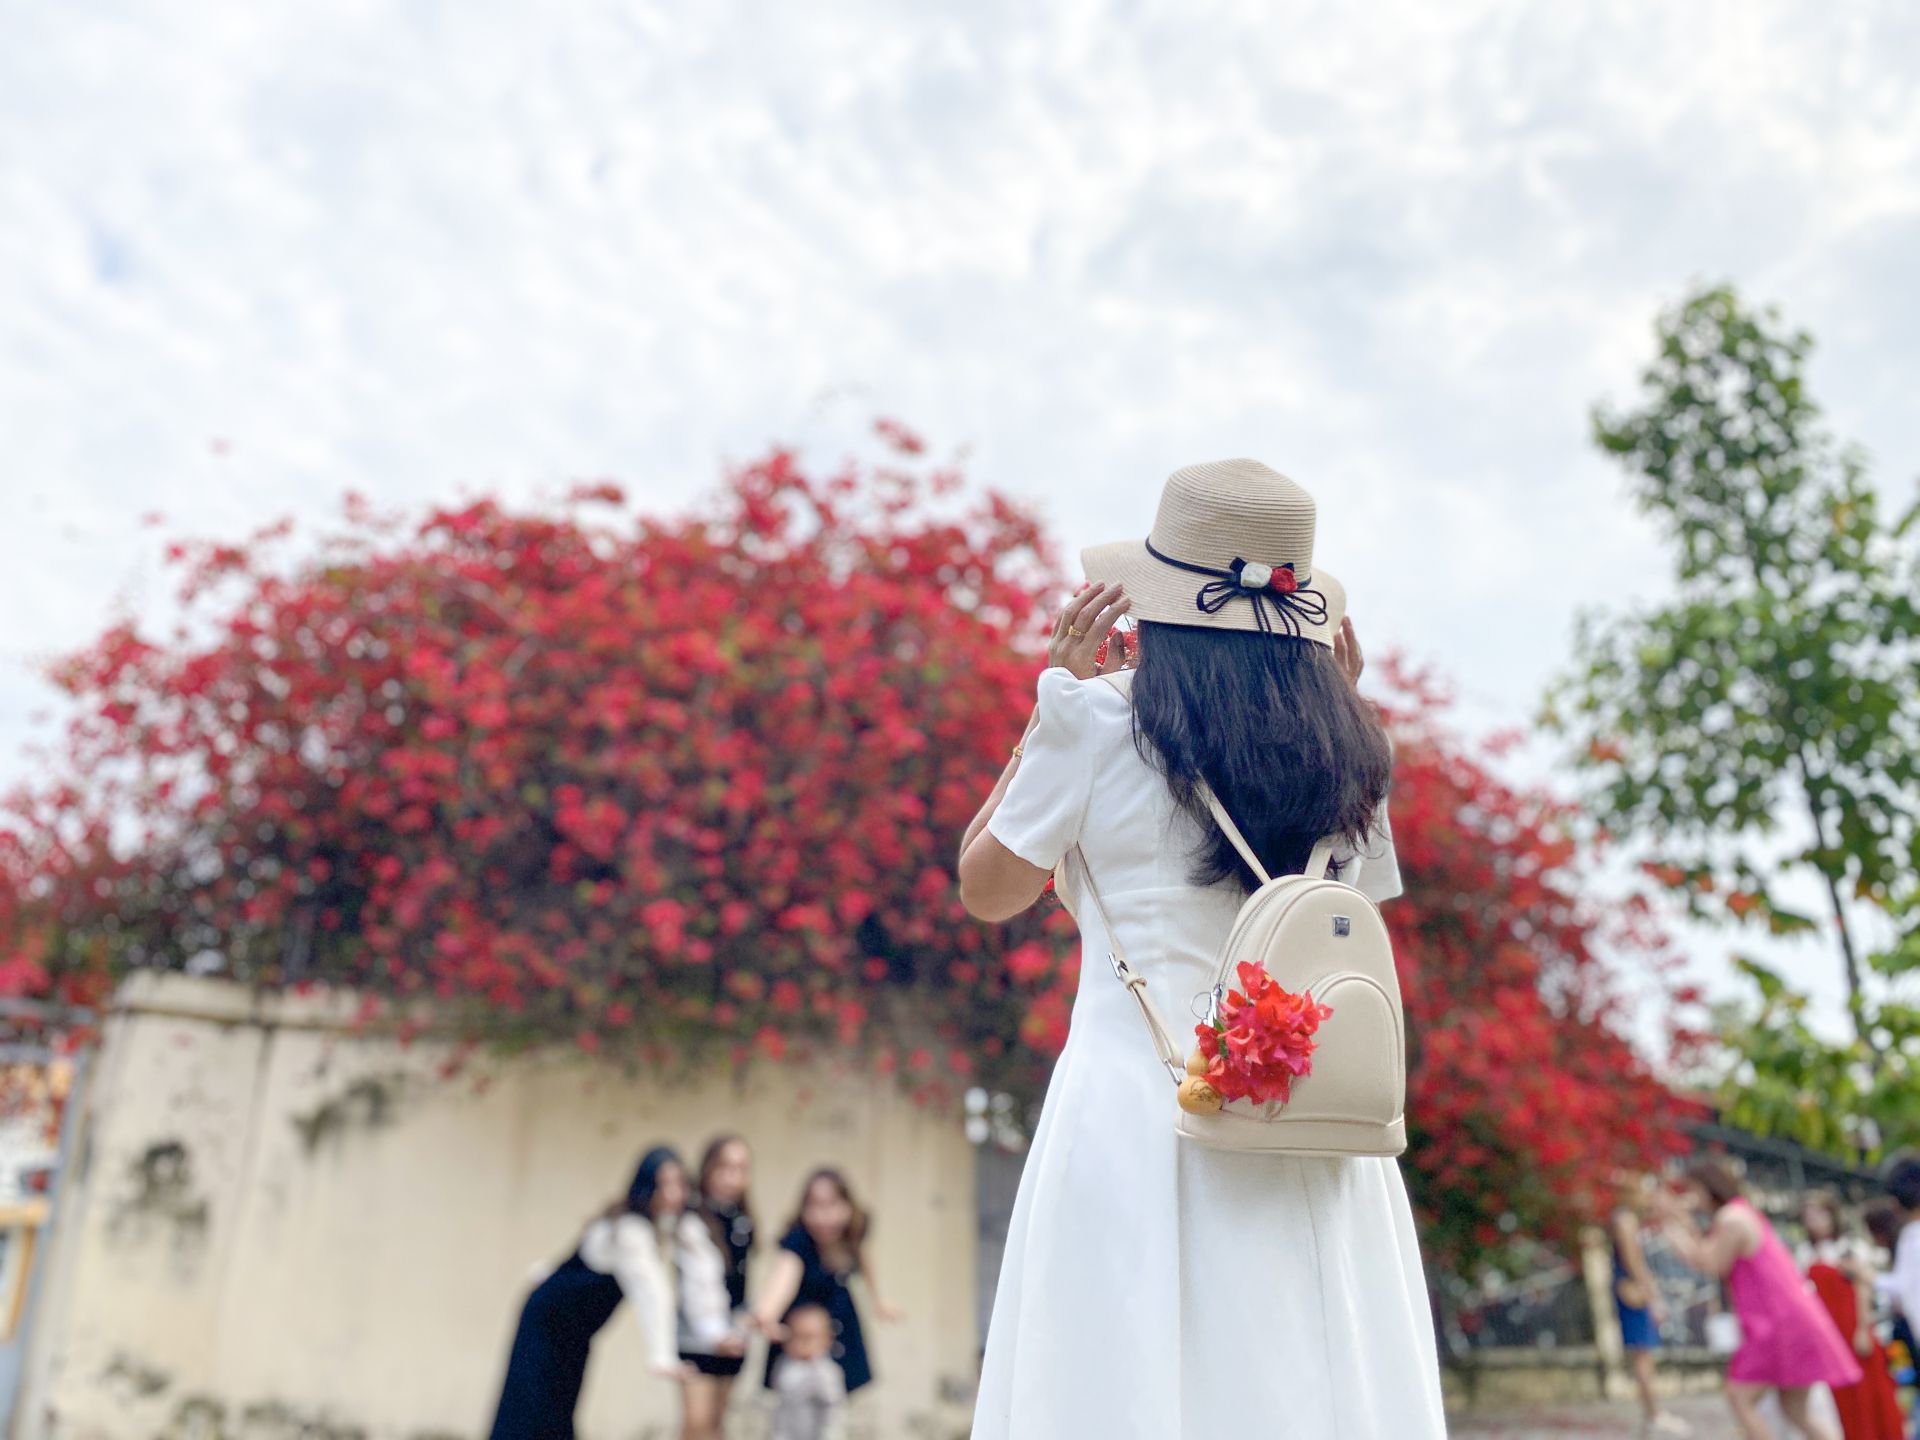 Một giàn hoa giấy tuôn bông đỏ không kịp cản đang xôn xao ở Tây Ninh, nhiều người đến chụp ảnh, ngắm say mê - Ảnh 6.